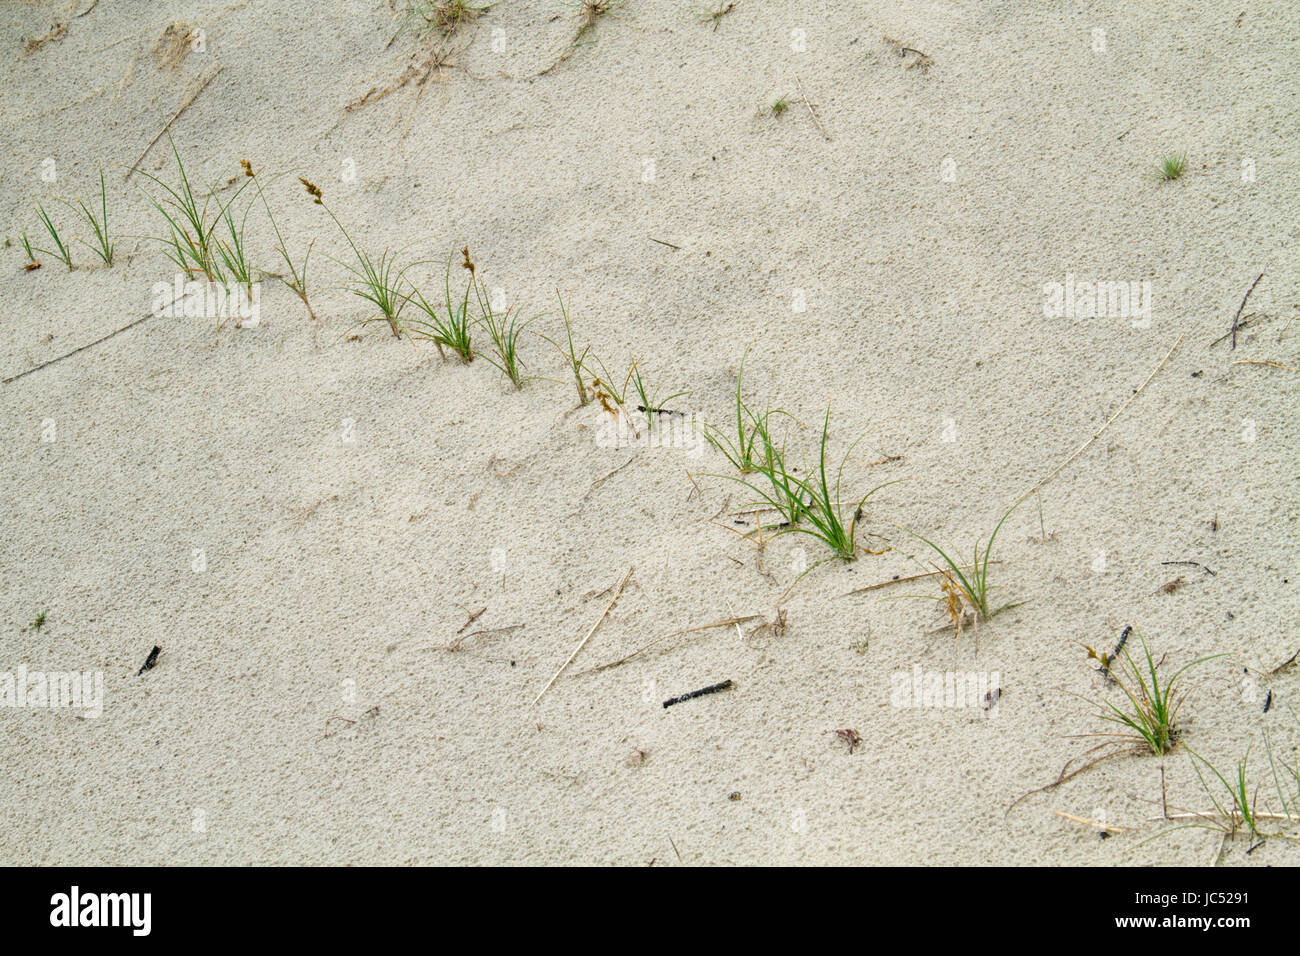 Hierba Marram estabilización de dunas móviles; las plantas jóvenes crecen en el extremo del rizoma rastrero Foto de stock